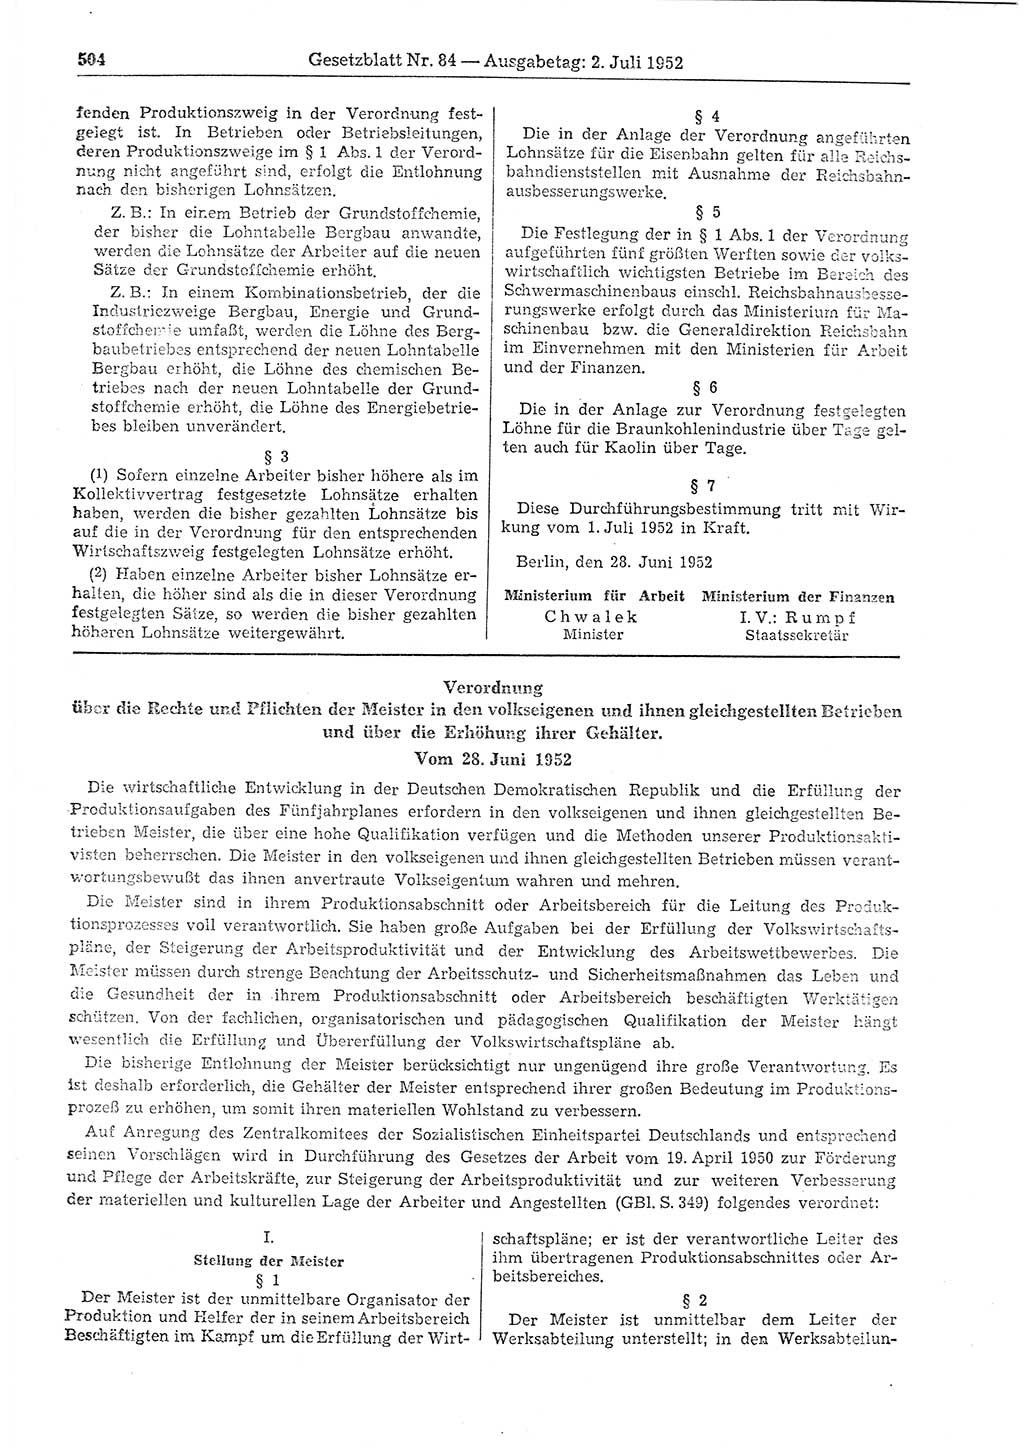 Gesetzblatt (GBl.) der Deutschen Demokratischen Republik (DDR) 1952, Seite 504 (GBl. DDR 1952, S. 504)